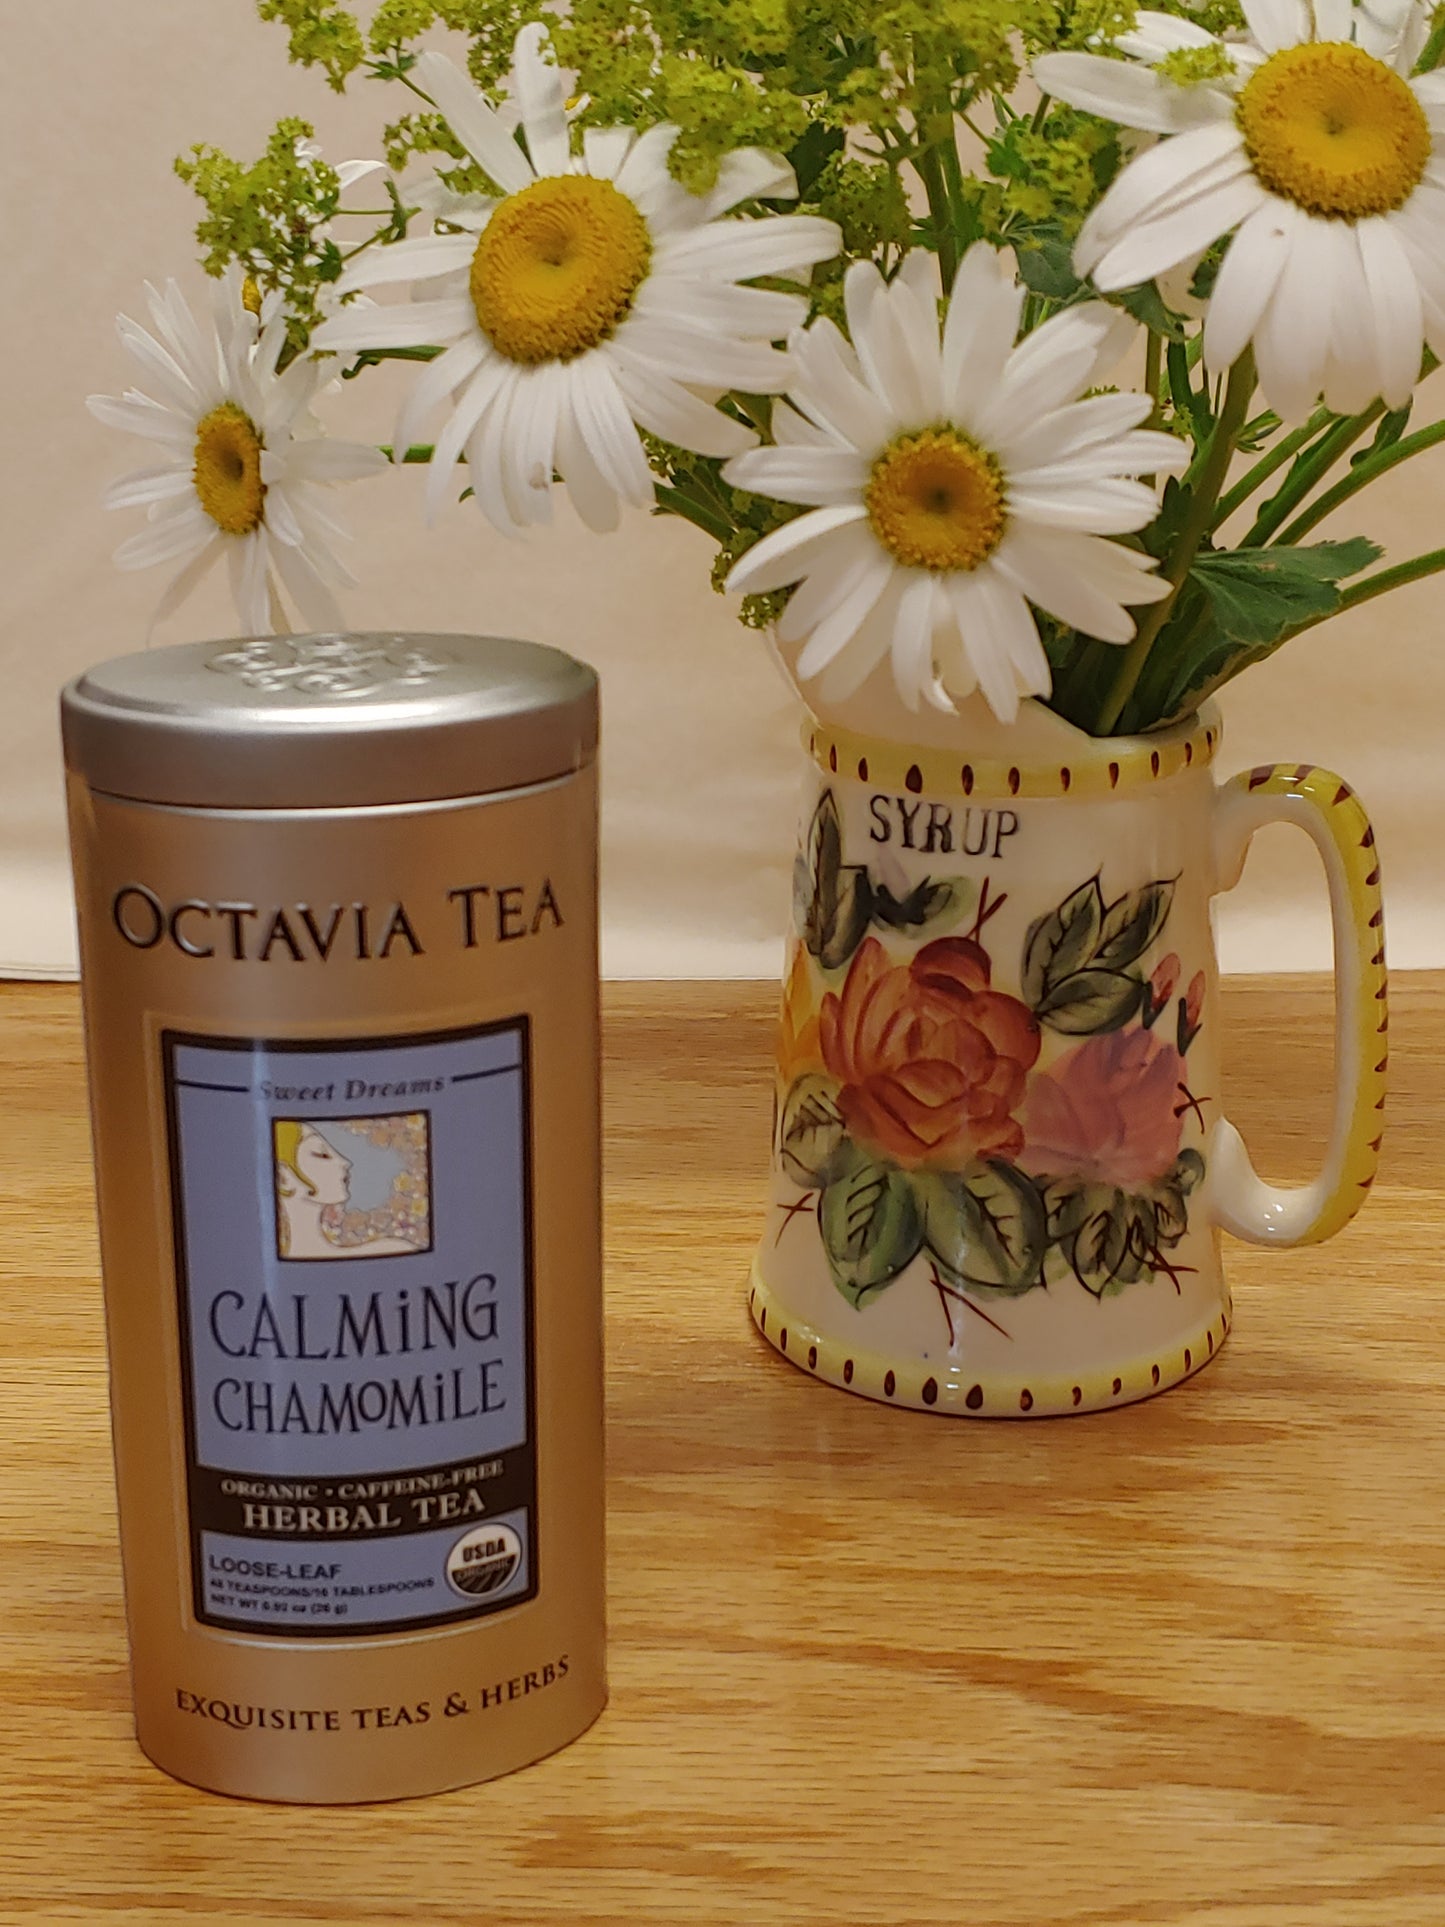 Octavia Tea Tin